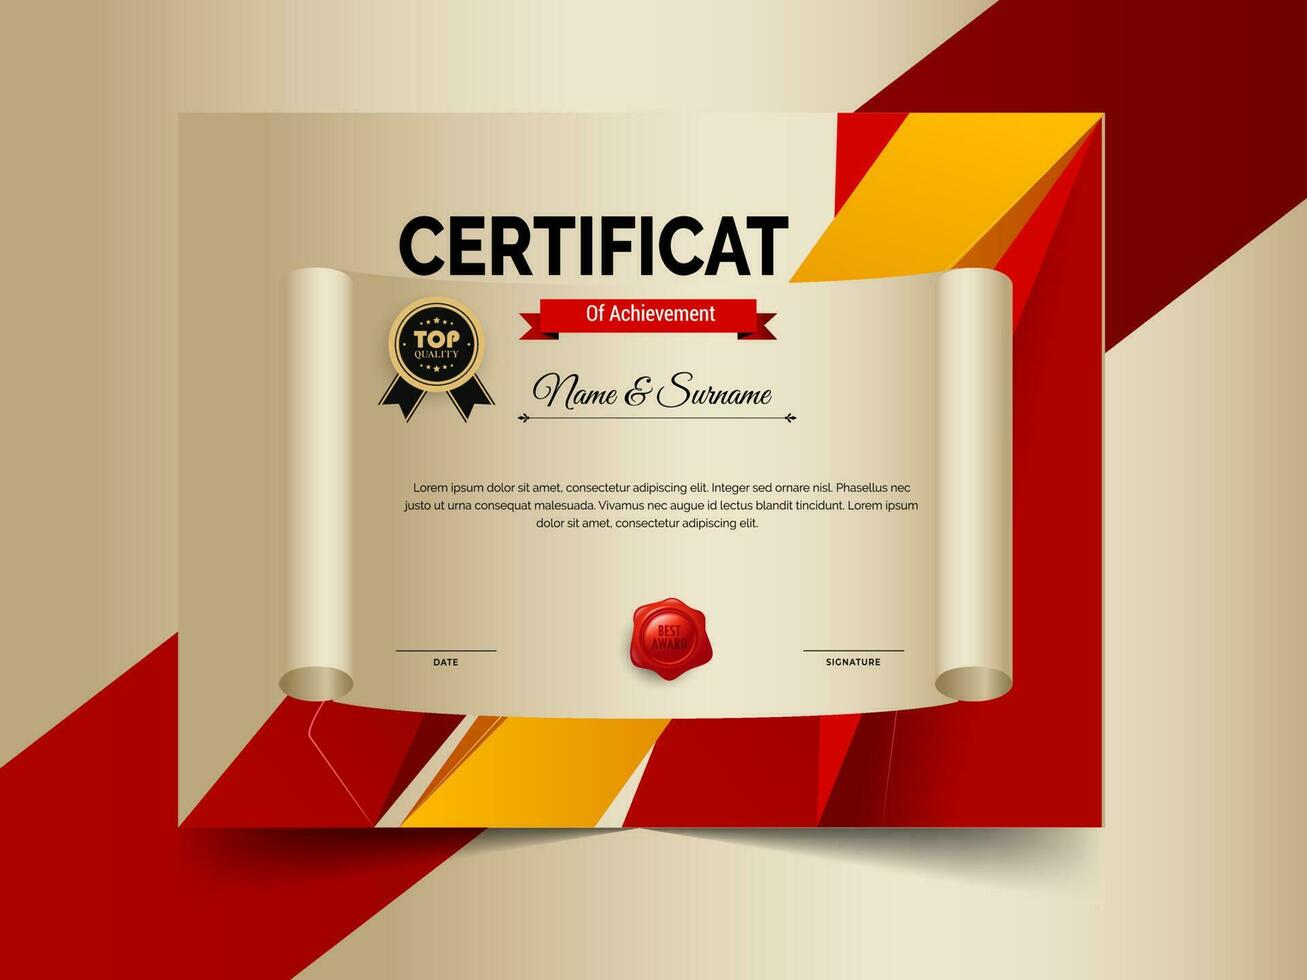 kreativ Zertifikat von Leistung Vorlage Design. Luxus elegant Blau und Gold Diplom, korporativ Ausbildung Zertifikat Design vektor